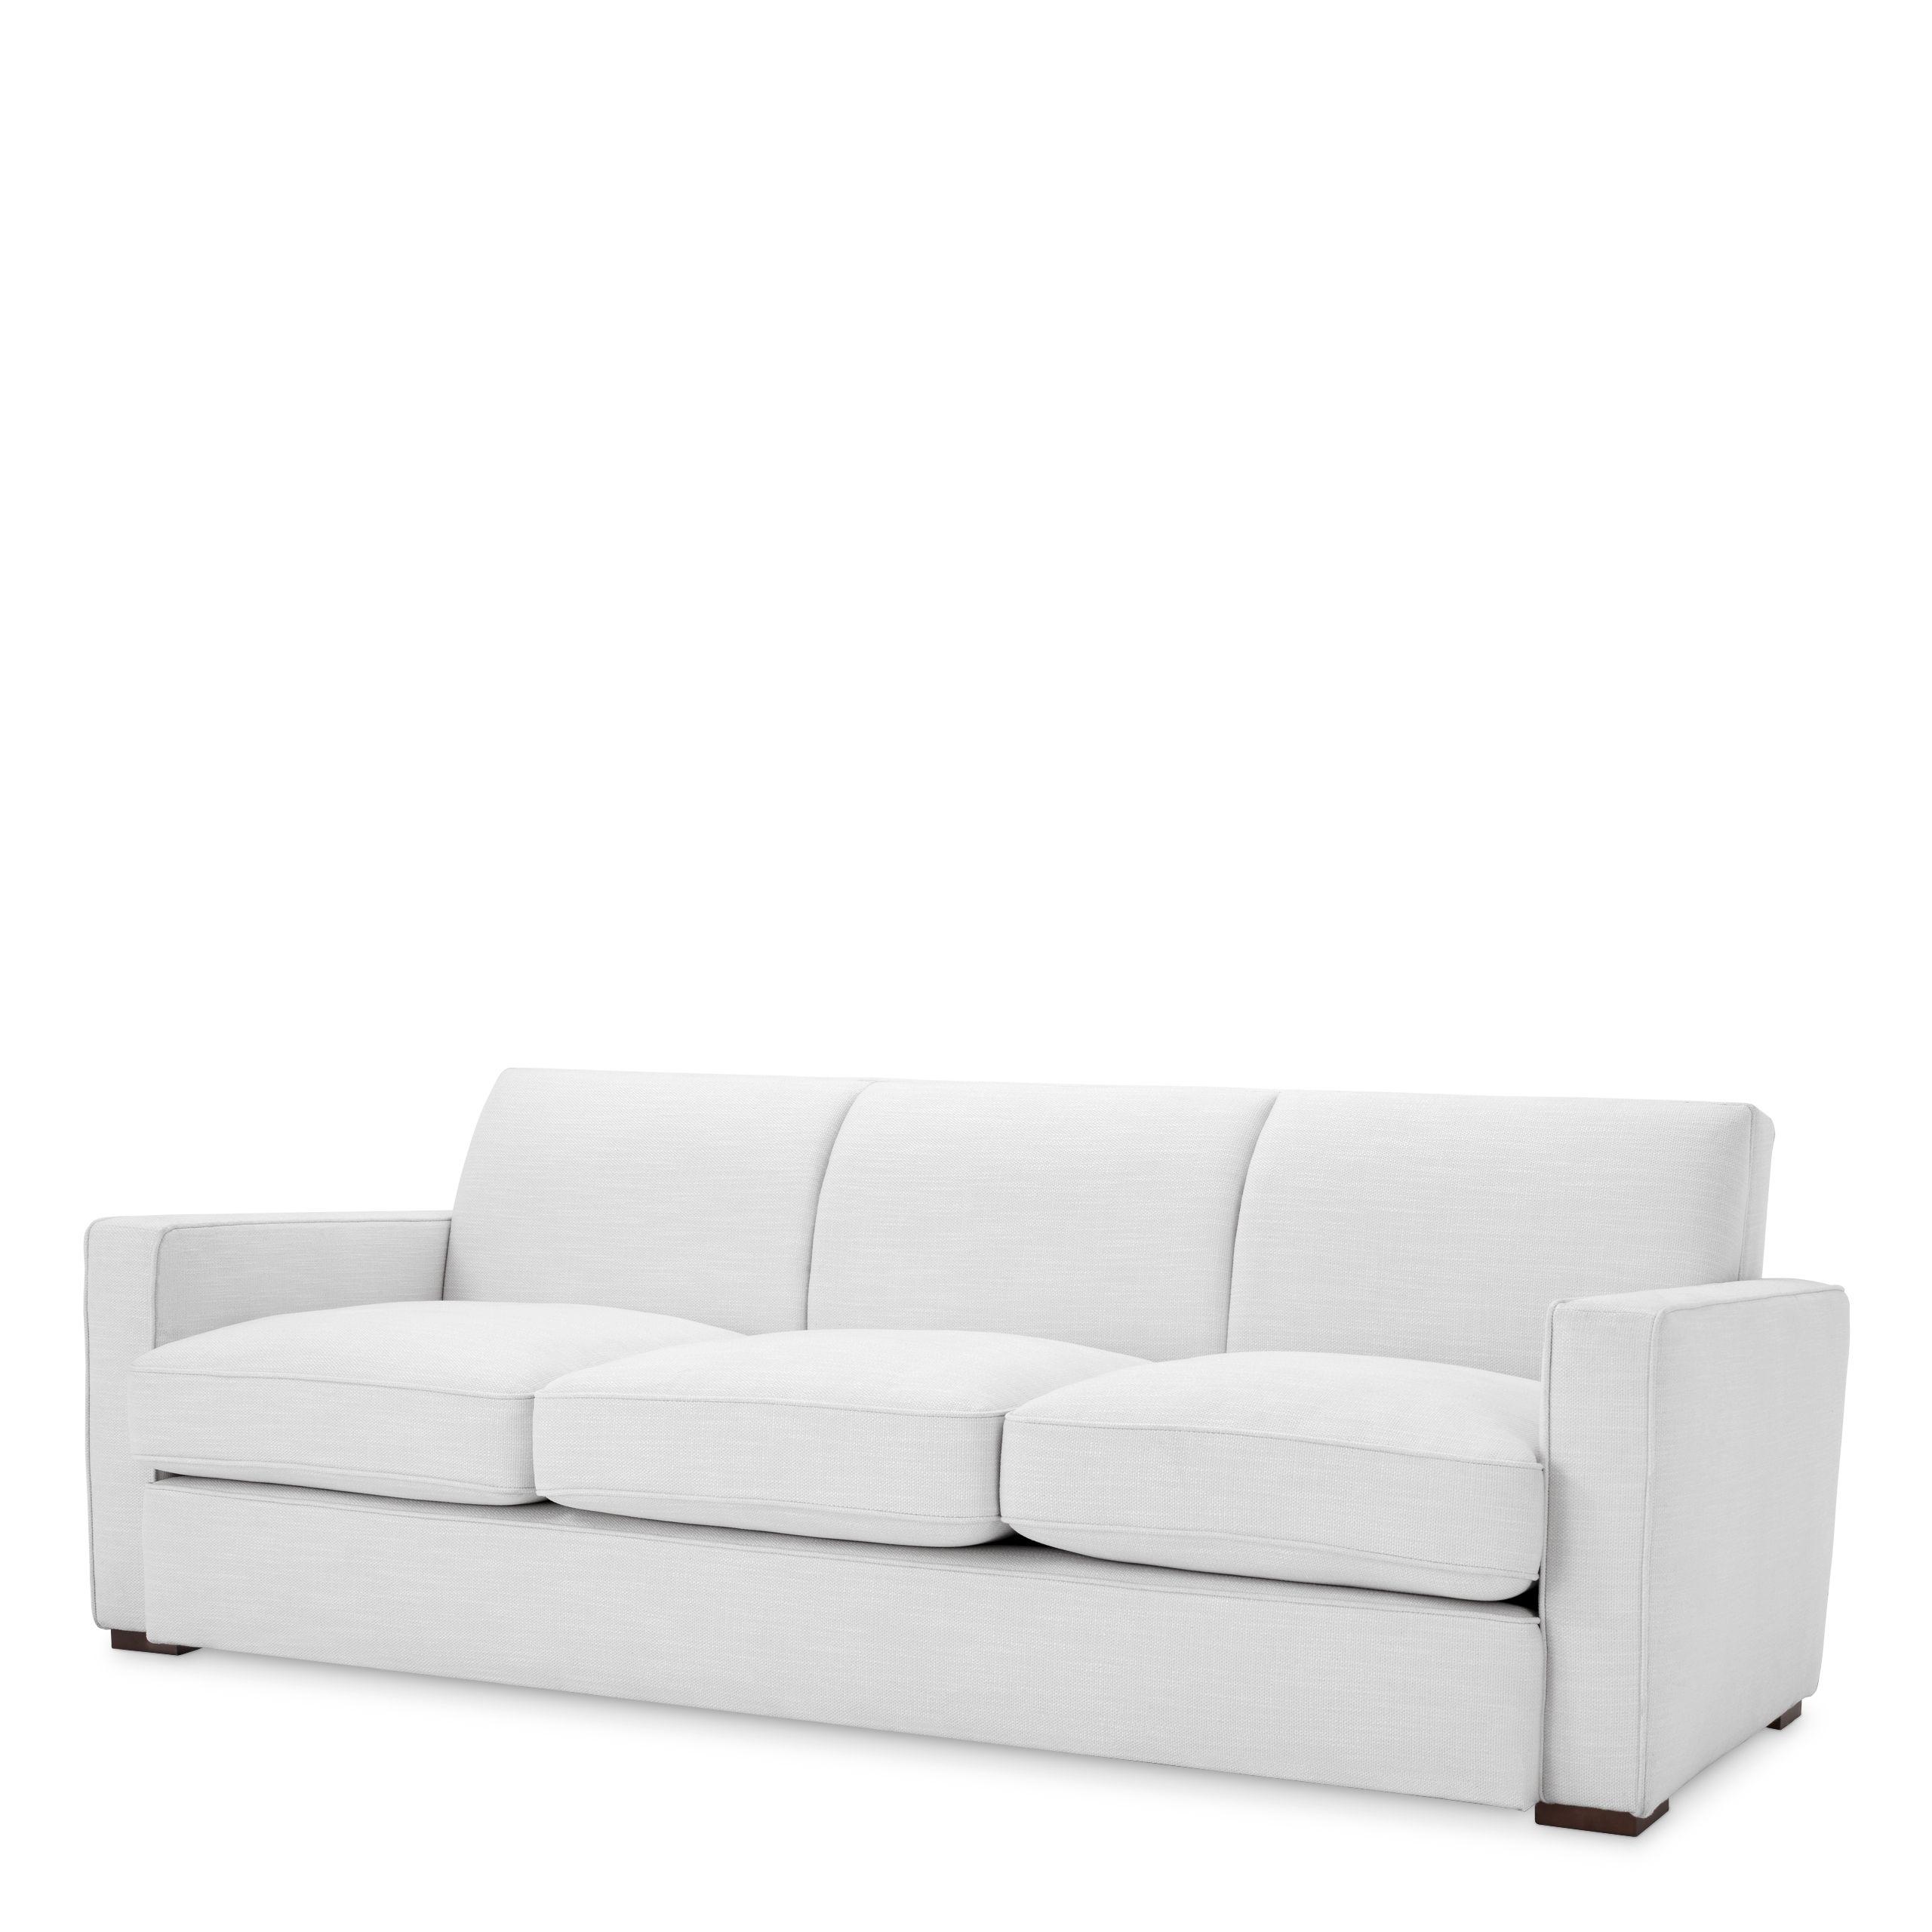 Купить Прямой диван Sofa Edmond в интернет-магазине roooms.ru